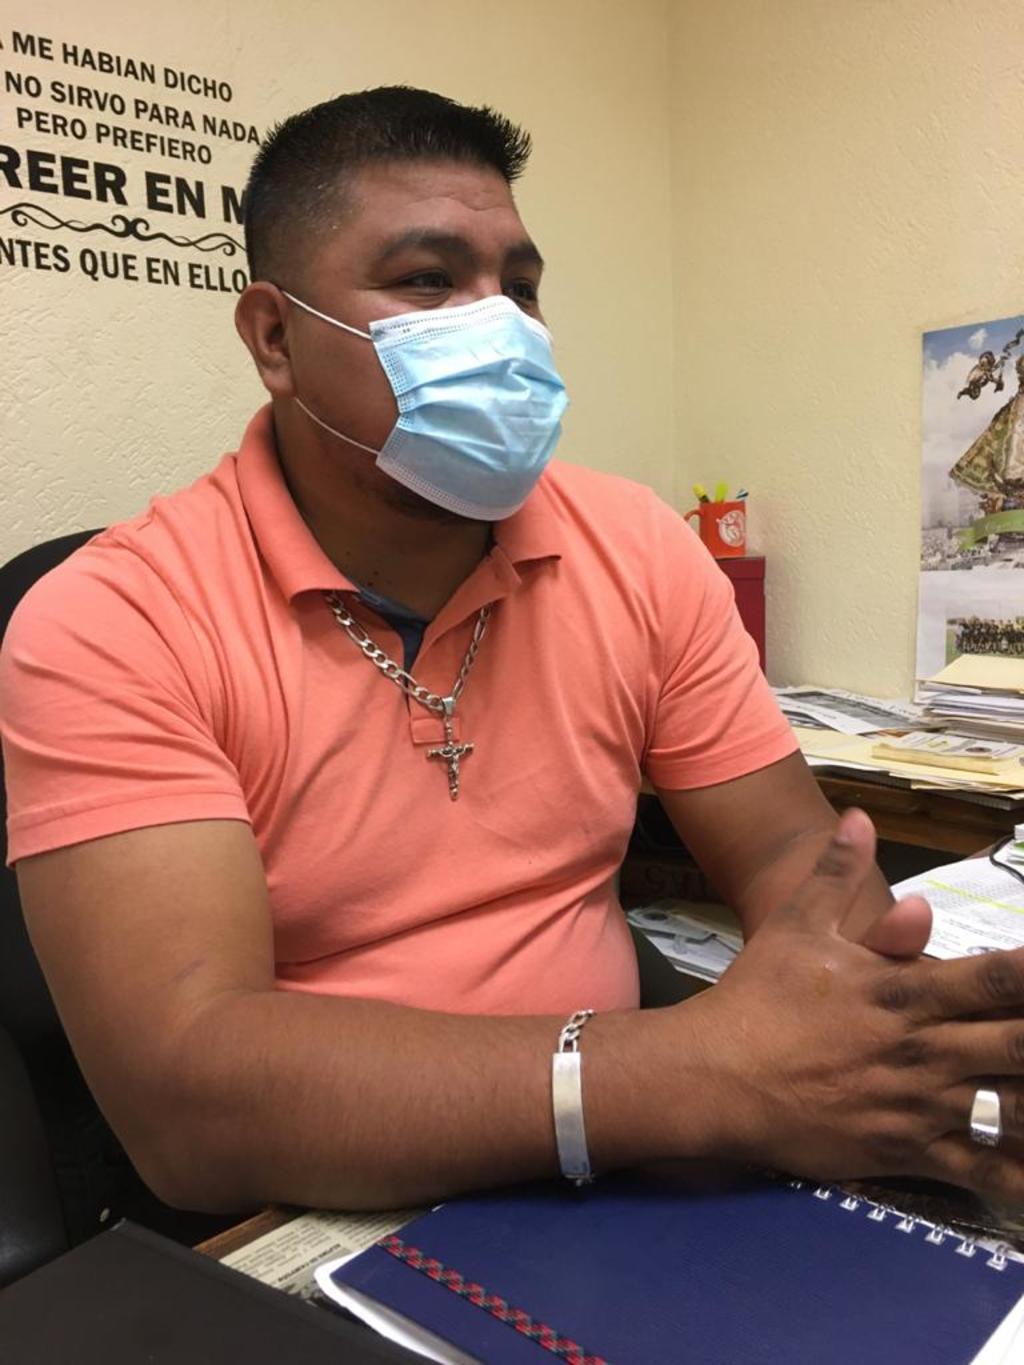 El portavoz del organismo gremial, Julio Cesar Aguilera Silva, indicó que hay protocolos sanitarios preventivos dentro de la industria, y mediante estos confirmaron los contagios de esta enfermedad.